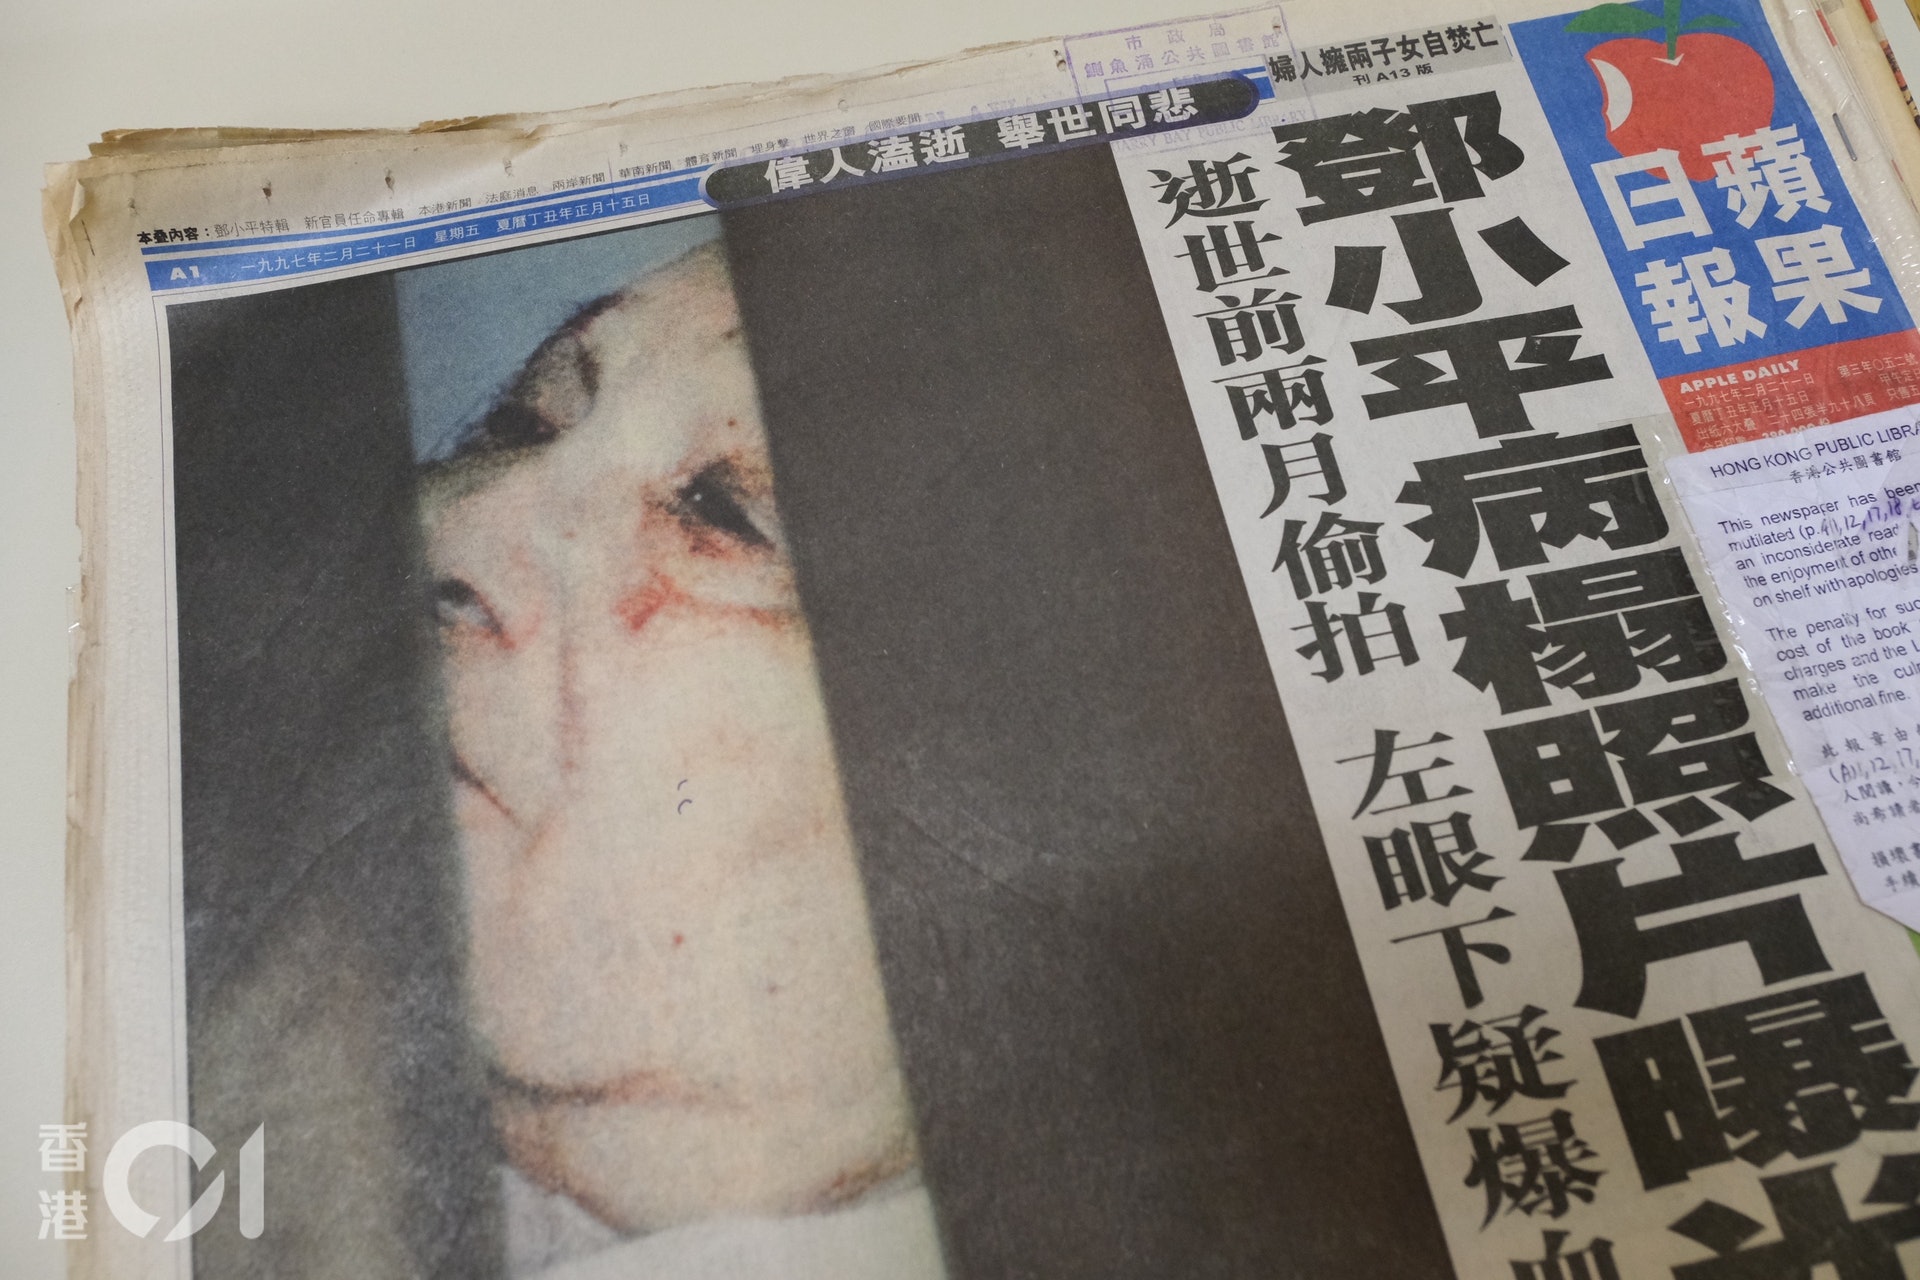 1997年2月21日，《蘋果日報》刊登了一幅獨家的中共已故領導人鄧小平最照片。後來《蘋果日報》表示，這幅照片由本港的資深傳媒人帶來，並直接與黎智英接洽，最後以約16萬元買下刊登。（盧翊銘攝）